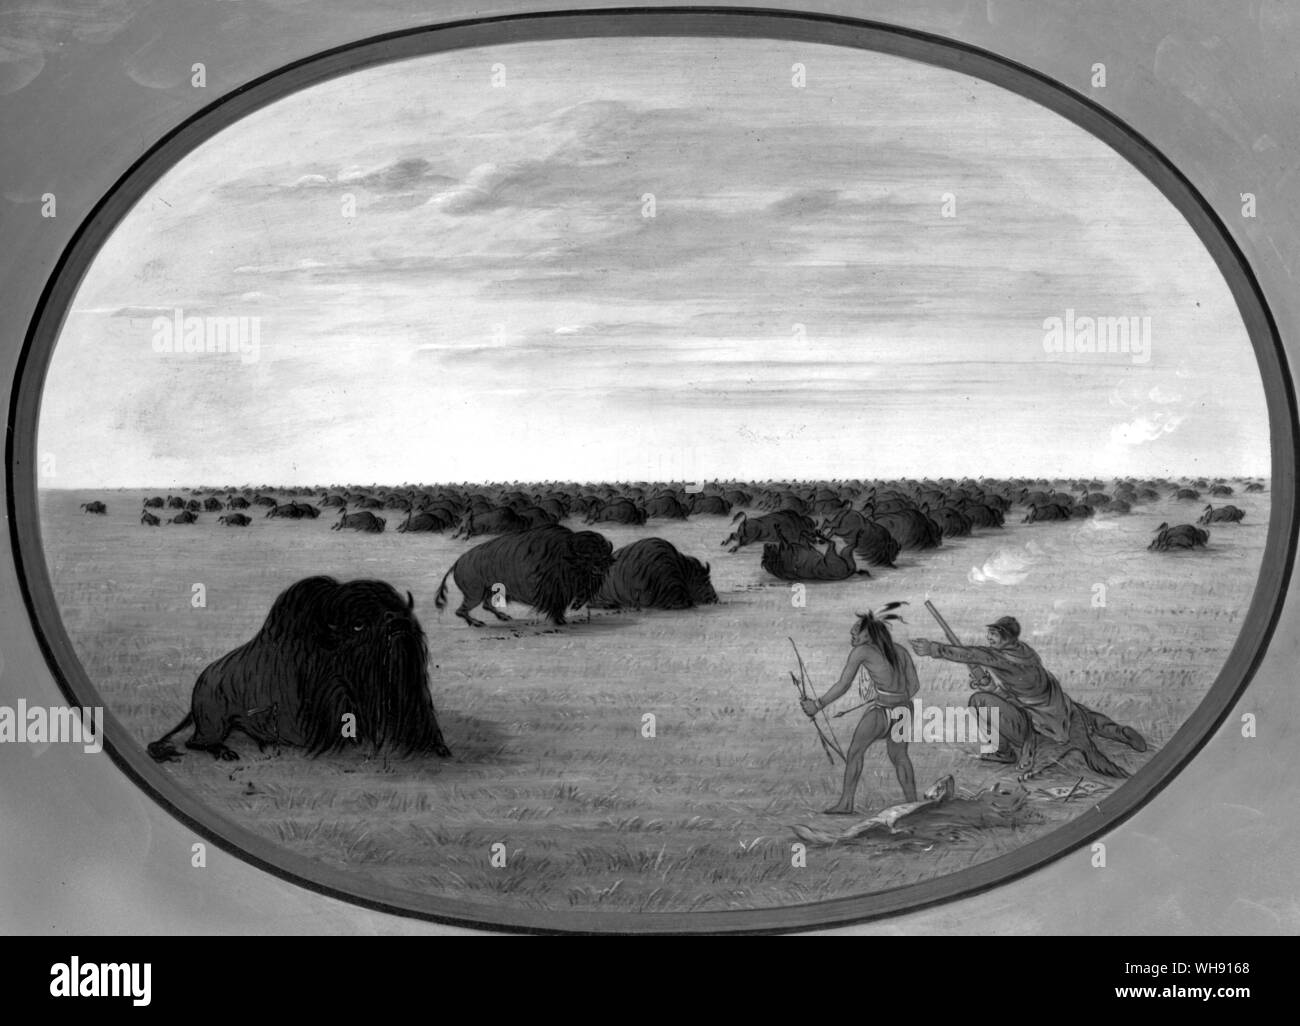 Catlin und einen indischen Begleiter die Herde in wolfskins angepirscht, nicht nur büffeln Point Blank zu schiessen, sondern auch der Ansicht für die Künstler immer anwesenden Skizzenbuch. Stockfoto